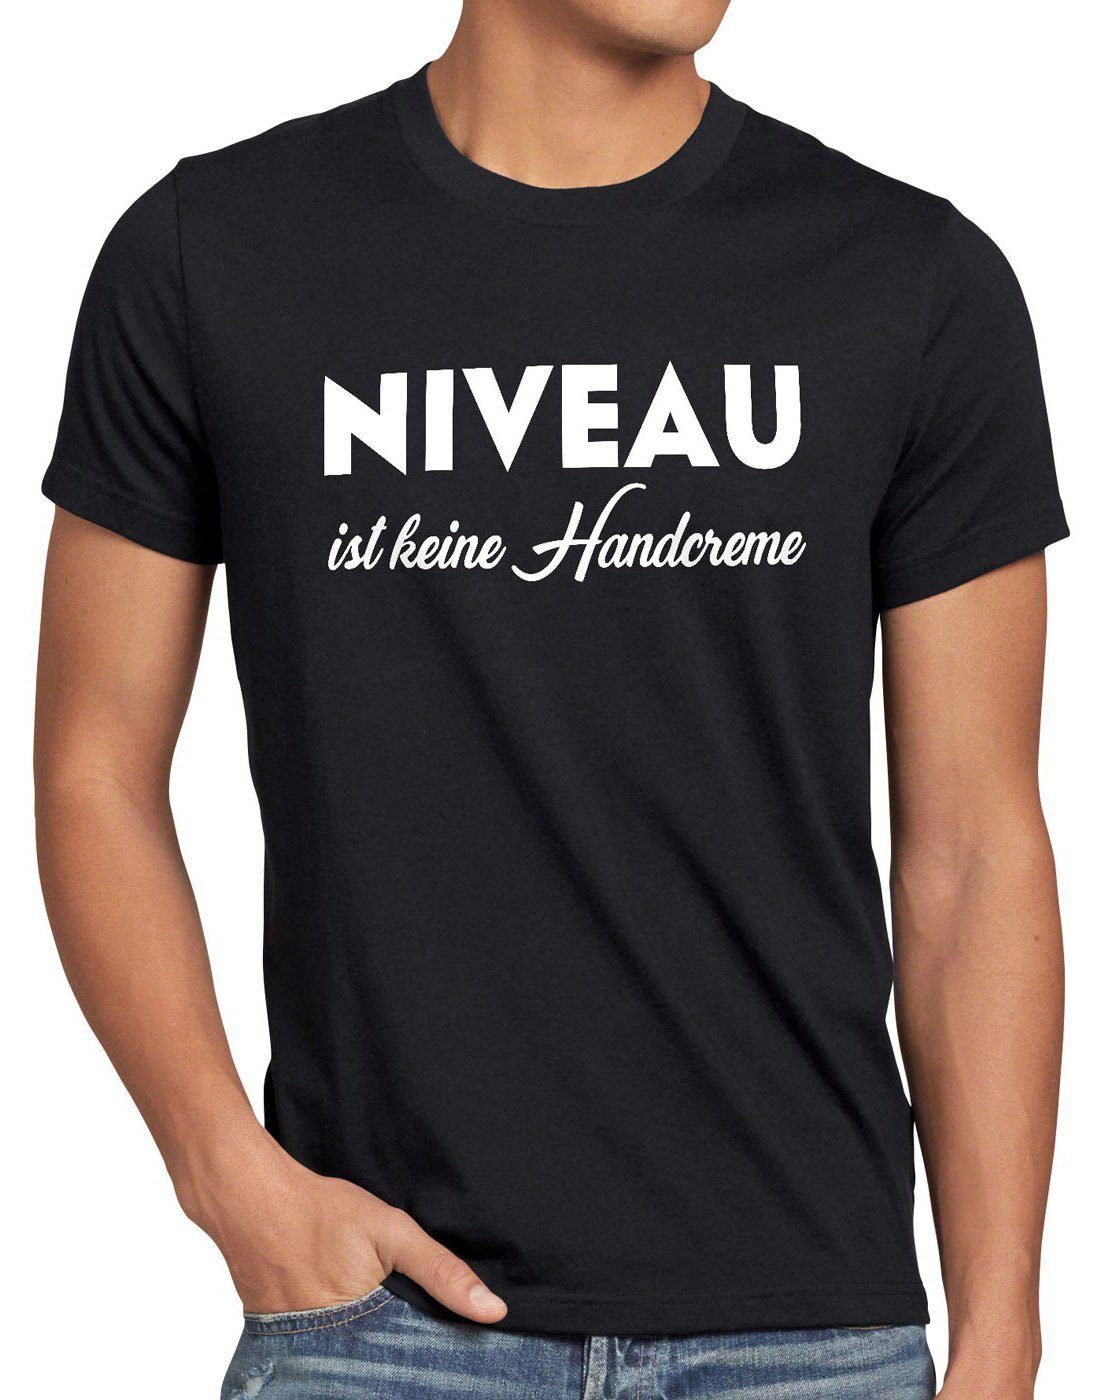 style3 Print-Shirt Herren T-Shirt Niveau ist keine Handcreme Creme Funshirt Spruch nivea fun lustig schwarz